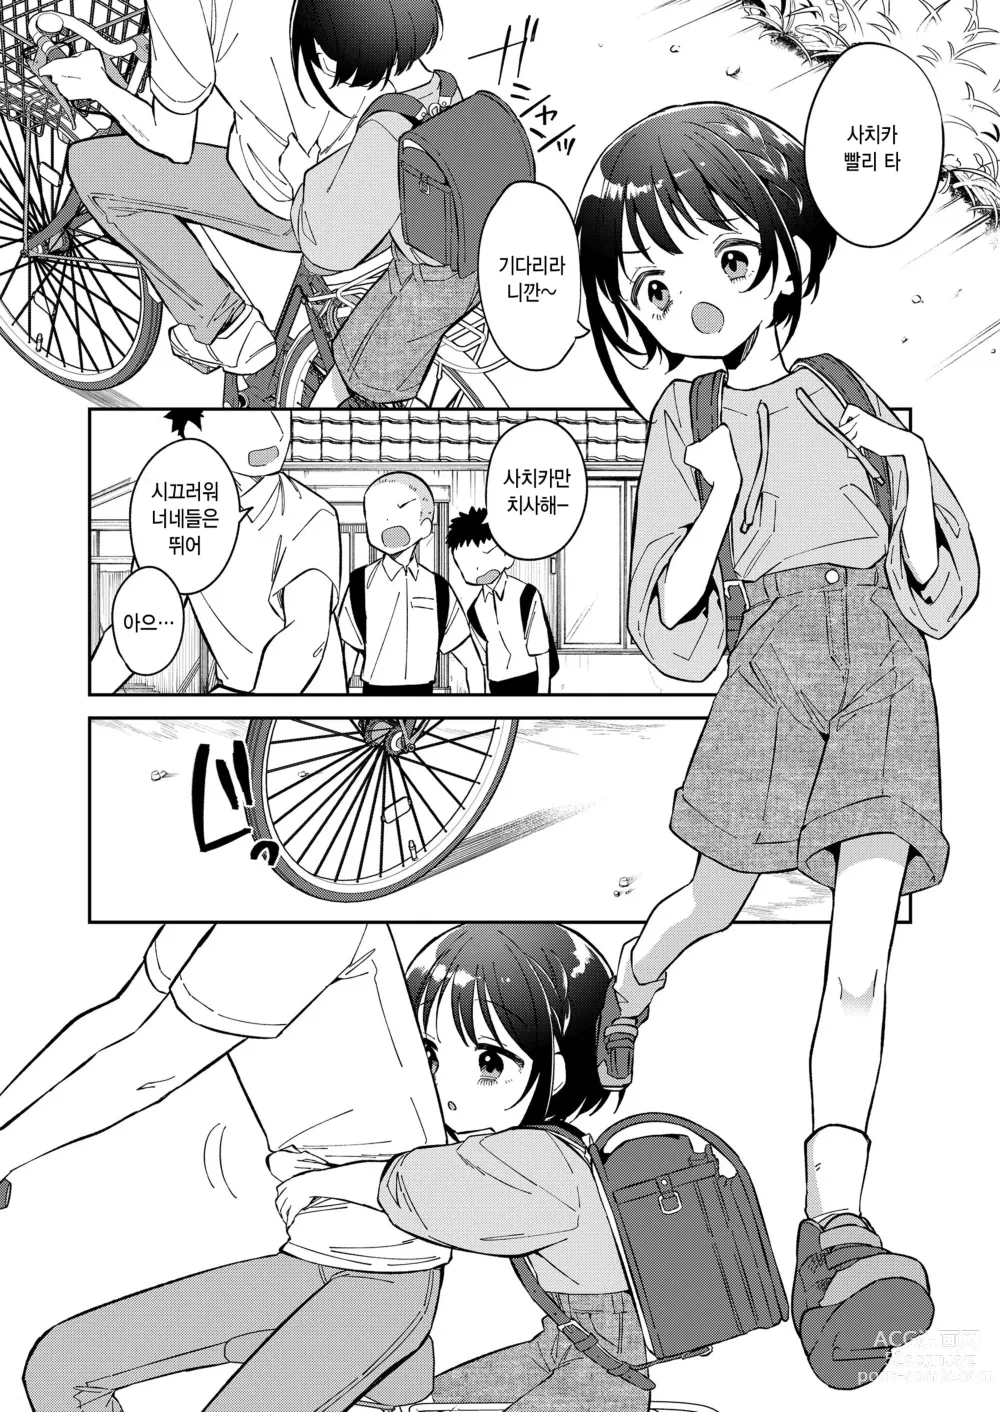 Page 2 of manga Watashi ga iki wo shiteru basho